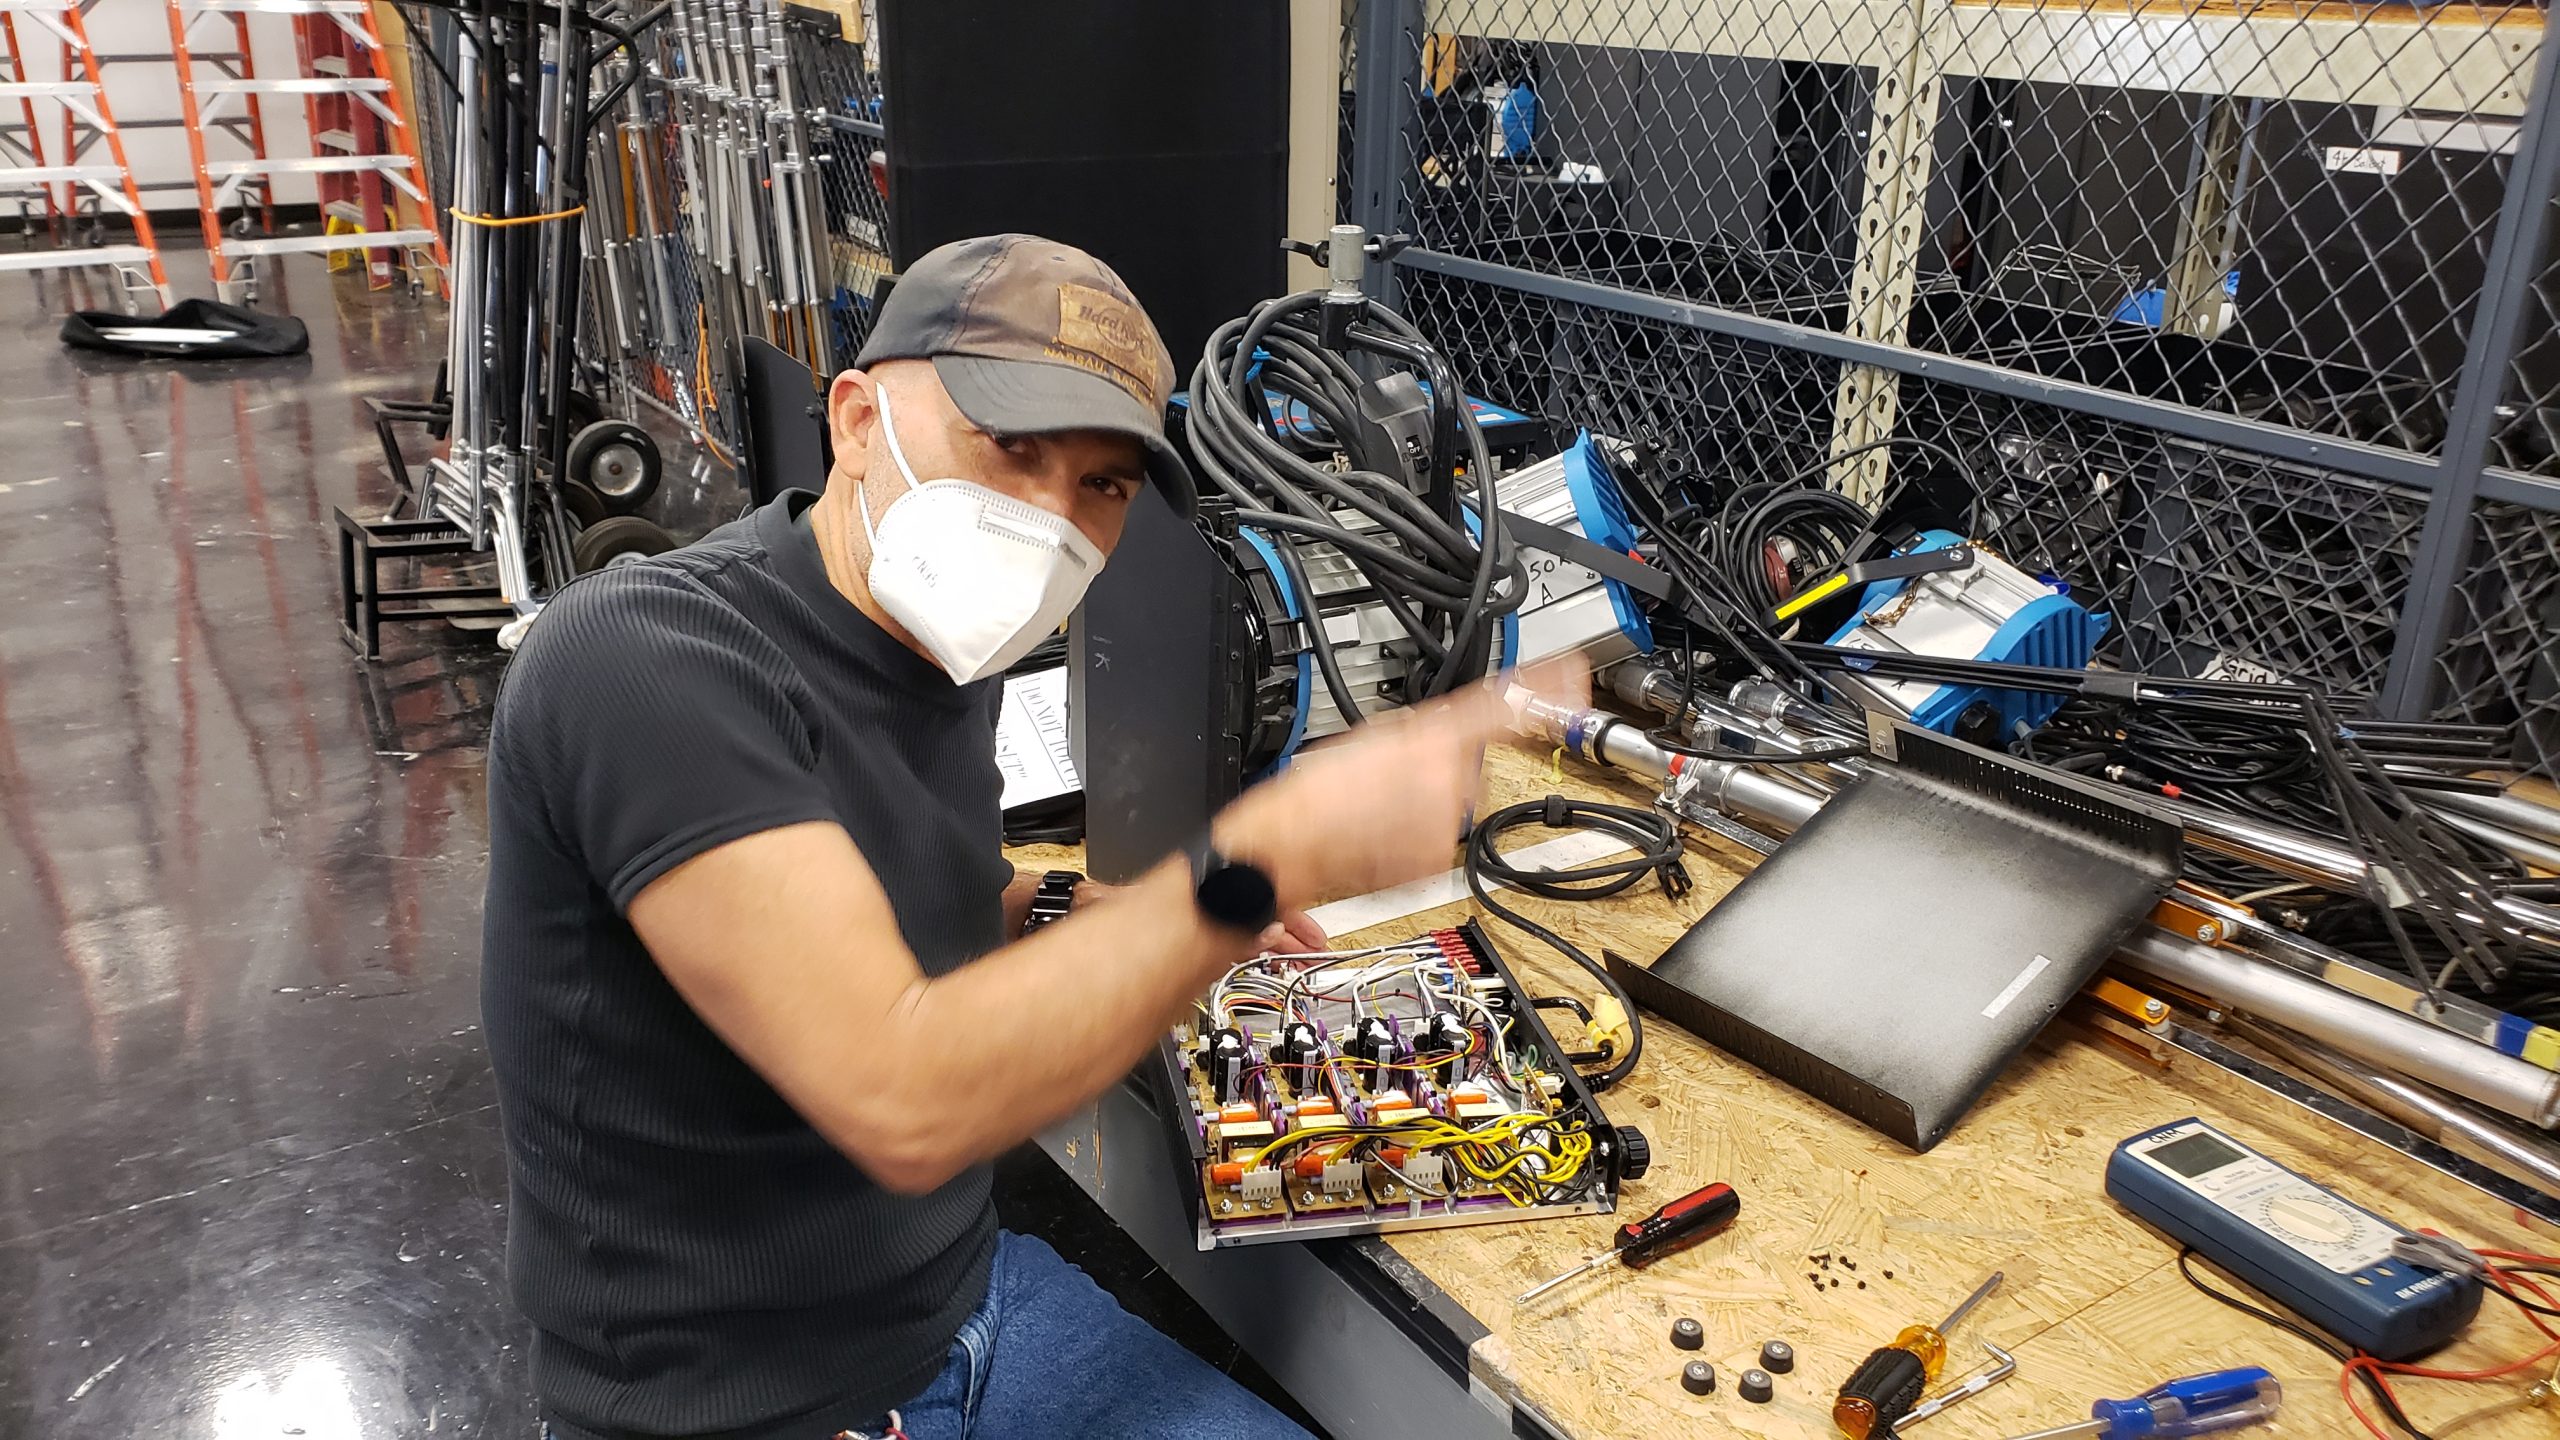 During Covid times Carlos Vilkerman kept busy repairing gear.